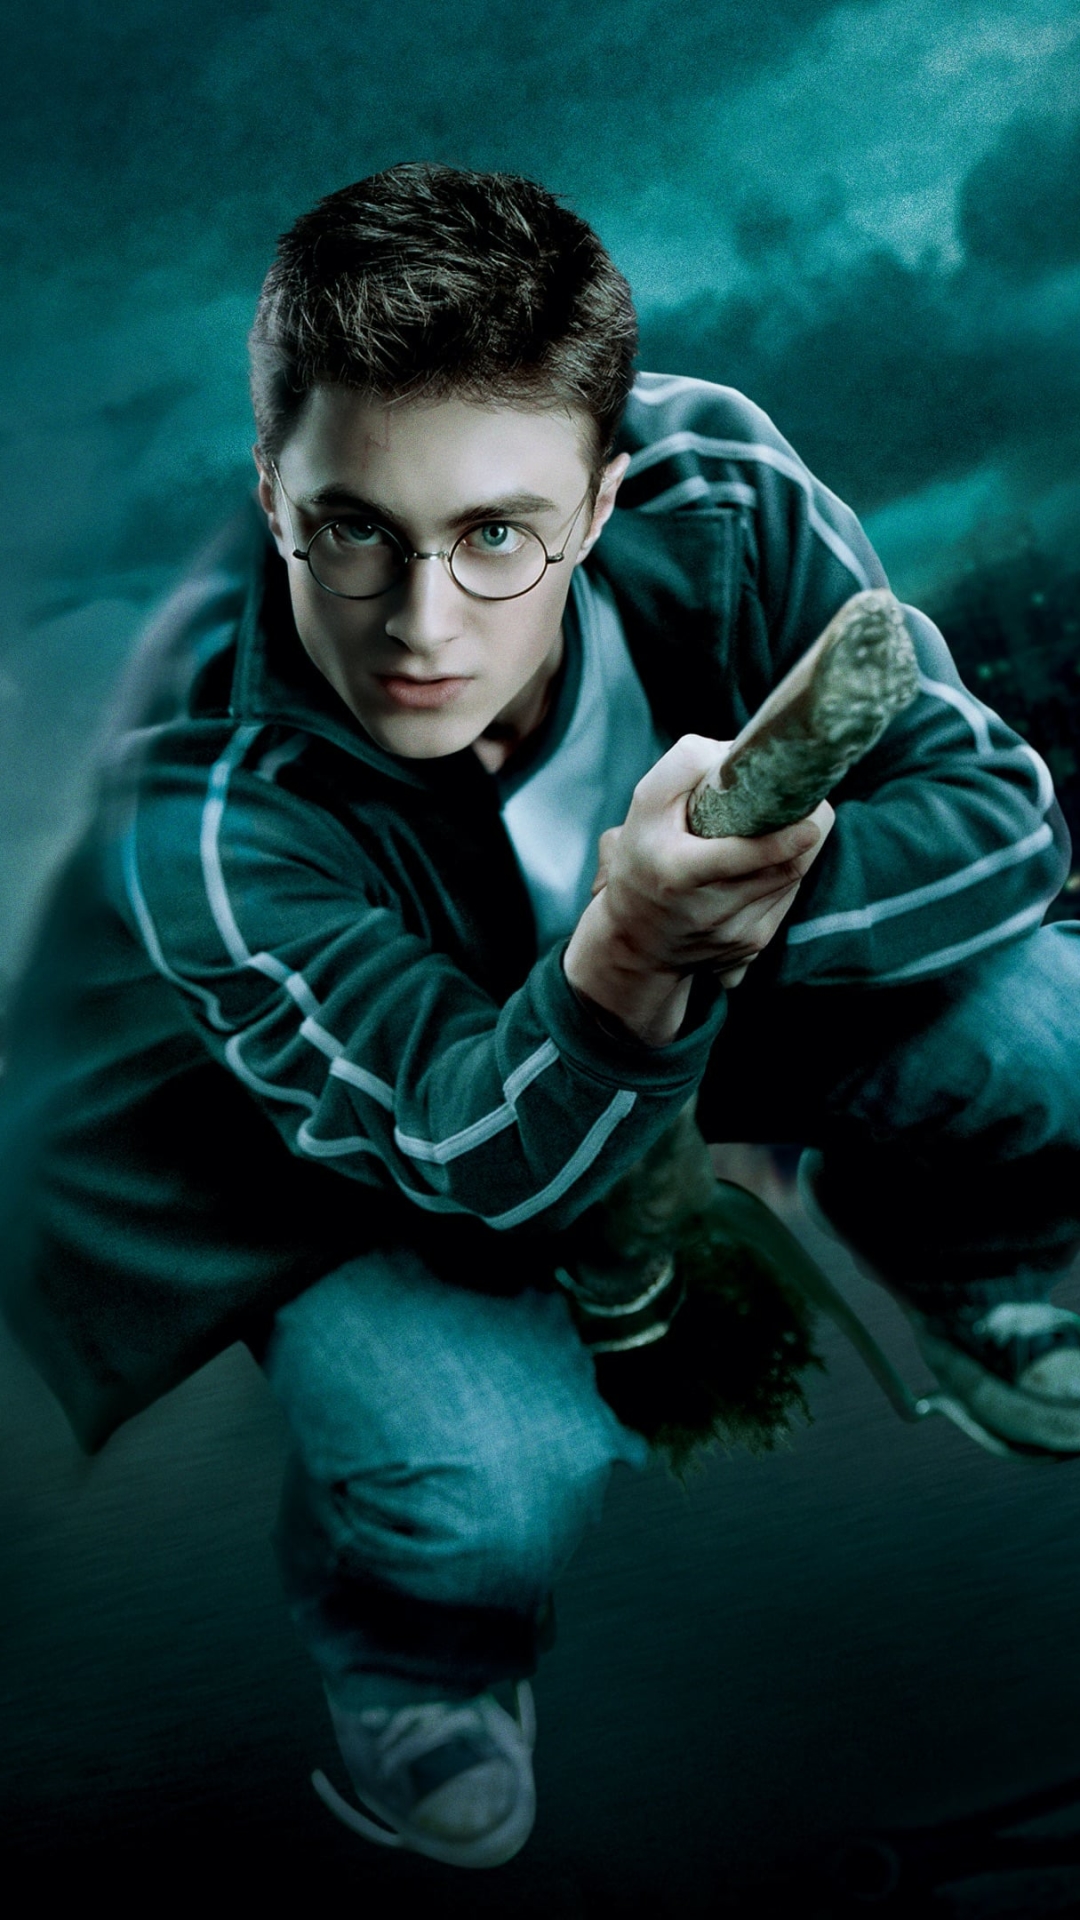 Descarga gratuita de fondo de pantalla para móvil de Harry Potter, Películas, Harry Potter Y La Orden Del Fénix.